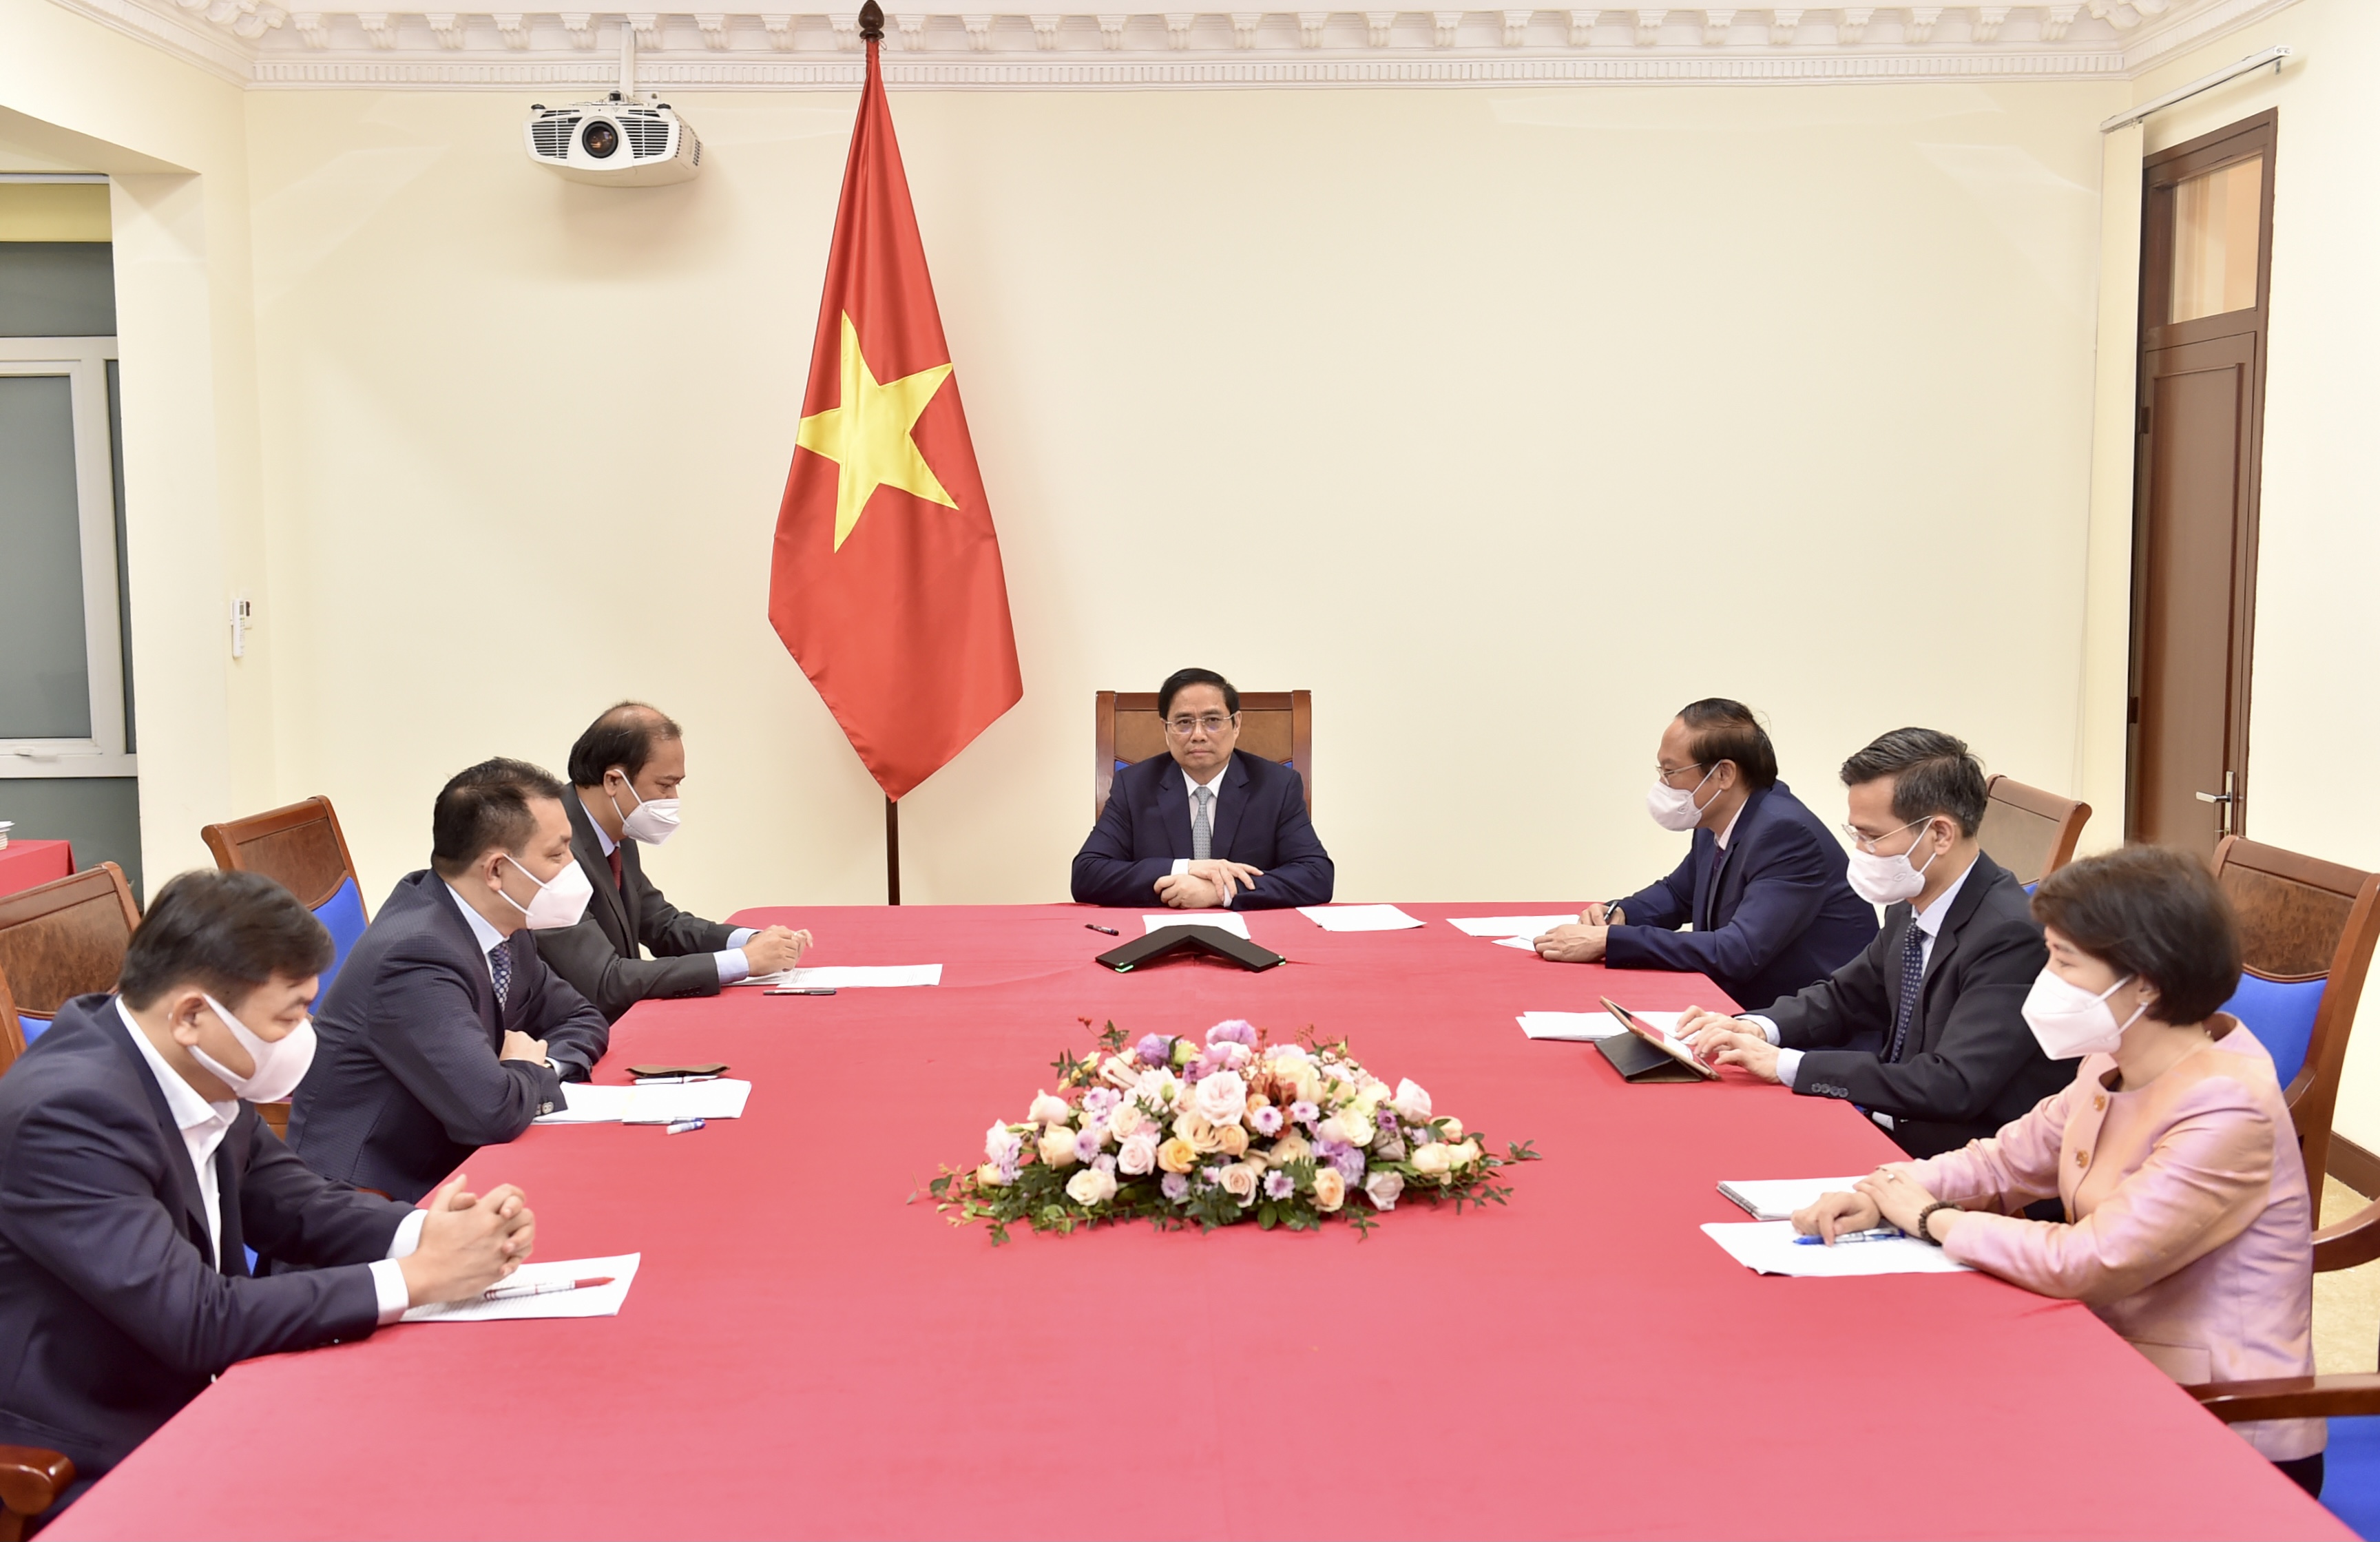 Việt Nam, Thổ Nhĩ Kỳ thúc đẩy hợp tác phòng chống dịch và mở cửa nền kinh tế